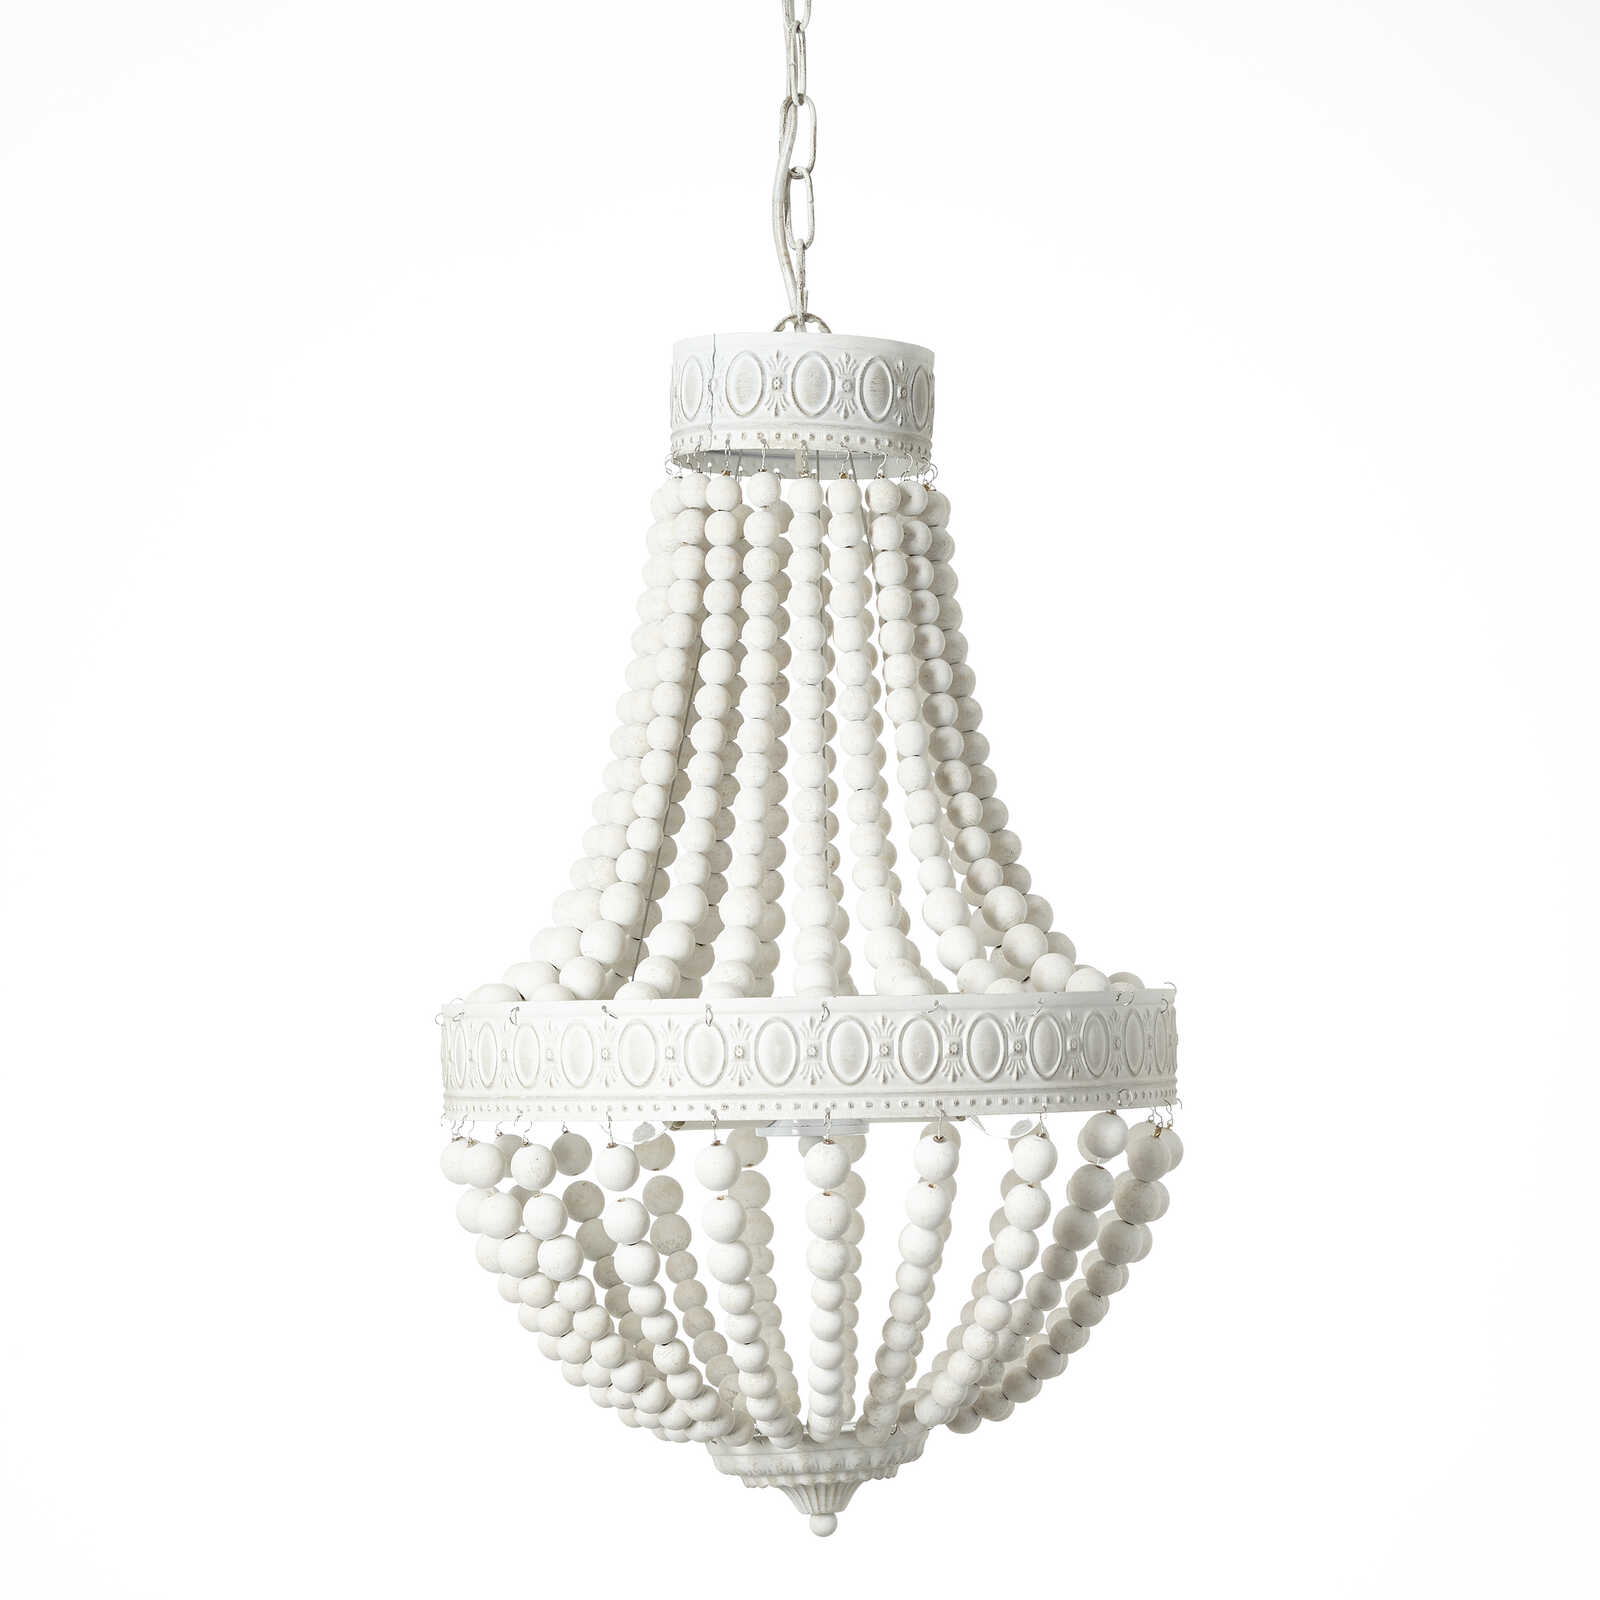             Wooden chandelier - Lars - White
        